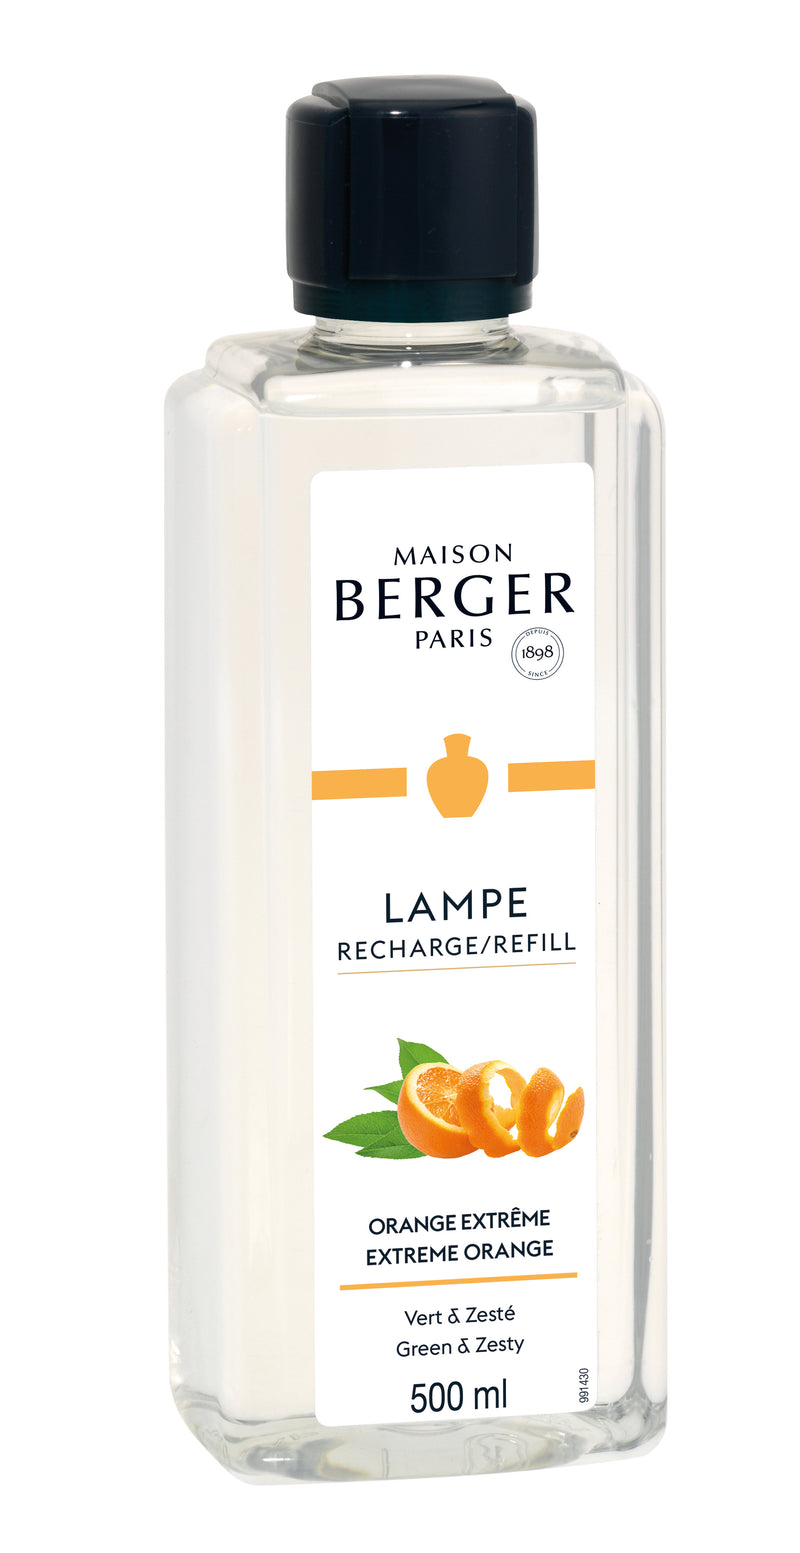 Lampe Berger huisparfum 500 ml - Extreme orange / Orange extrême